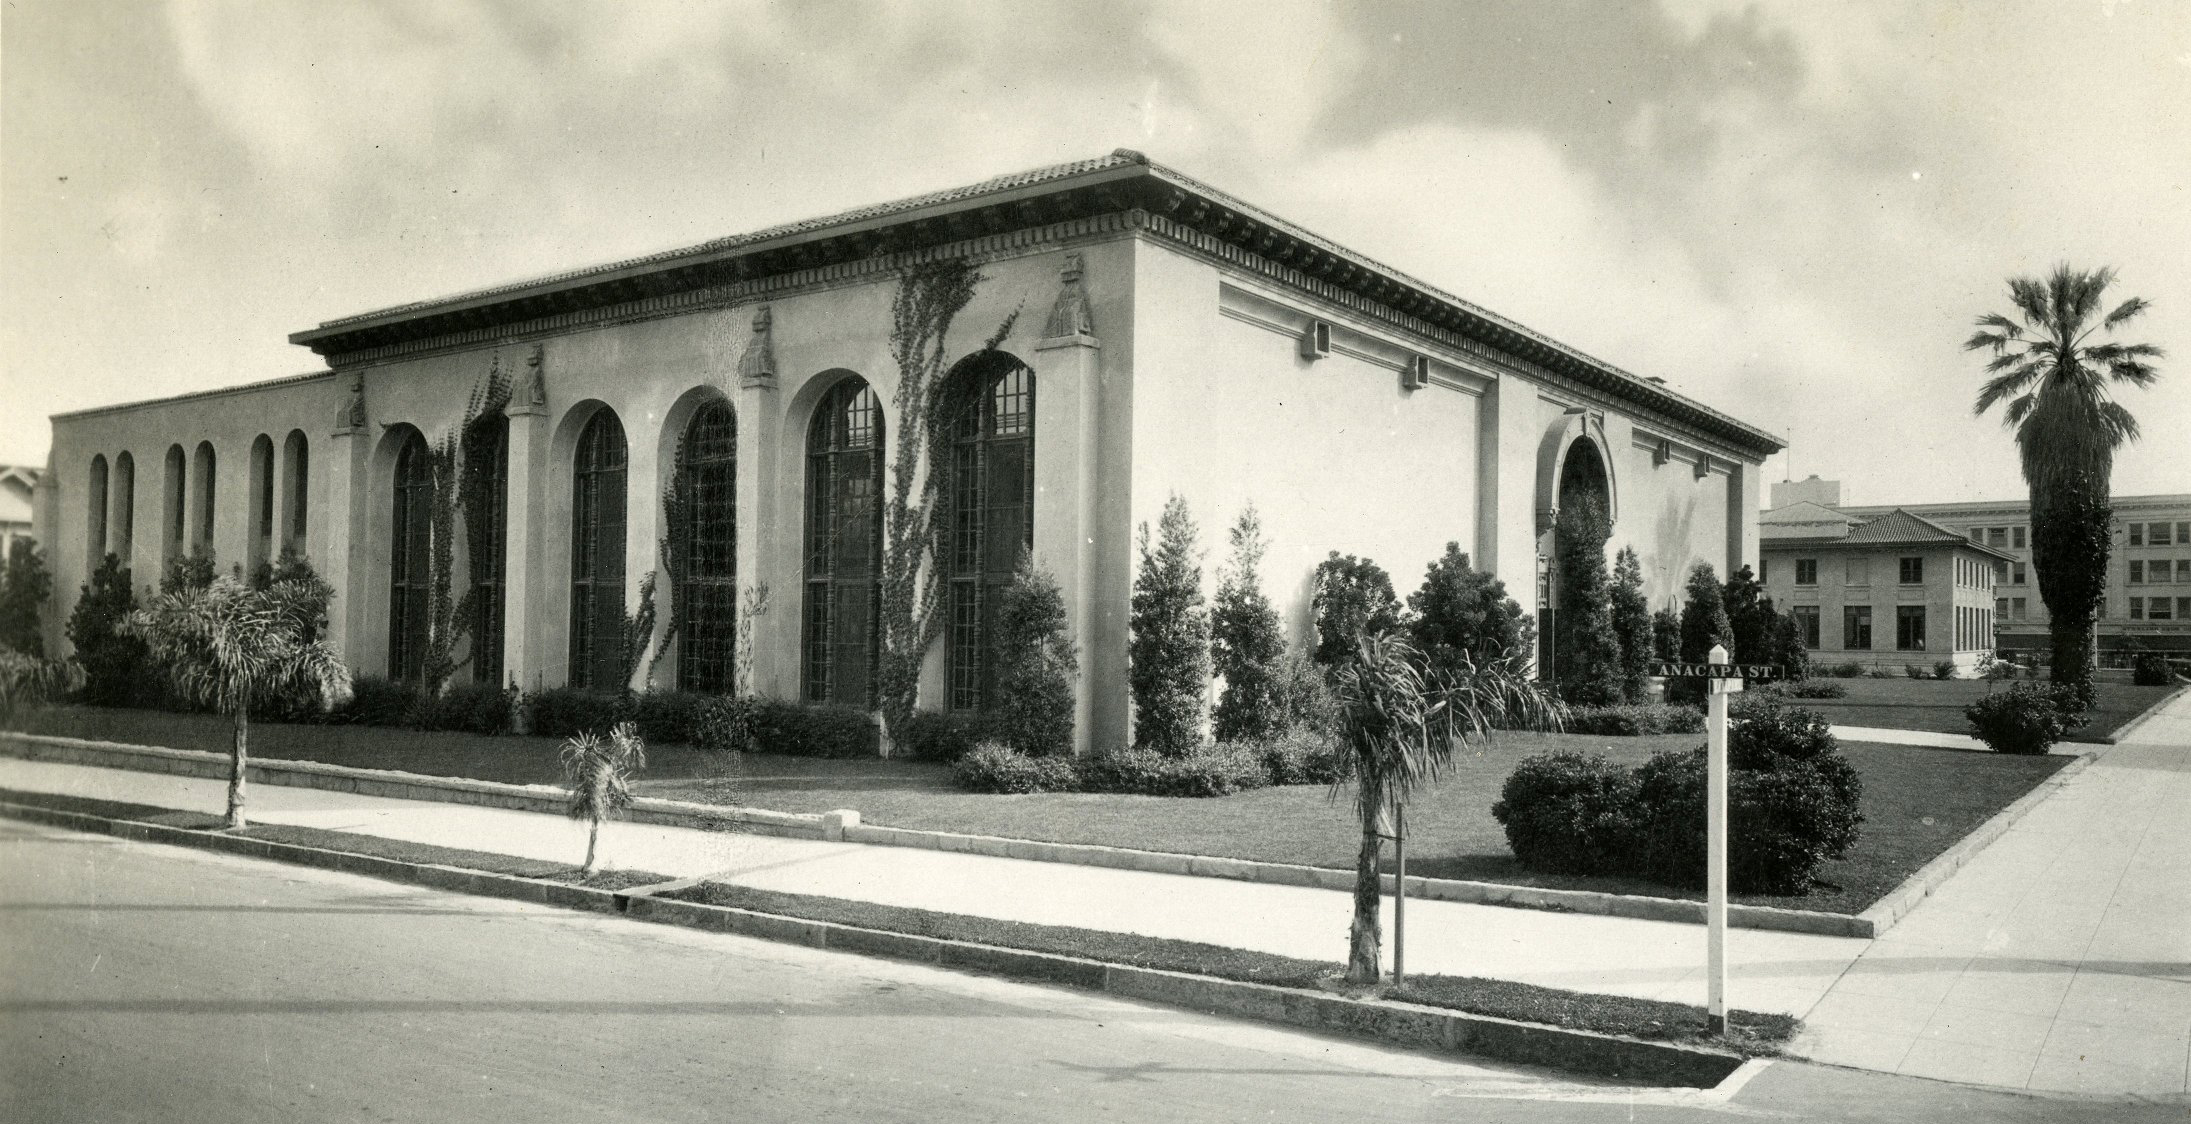 Historic Photo of Santa Barbara Library